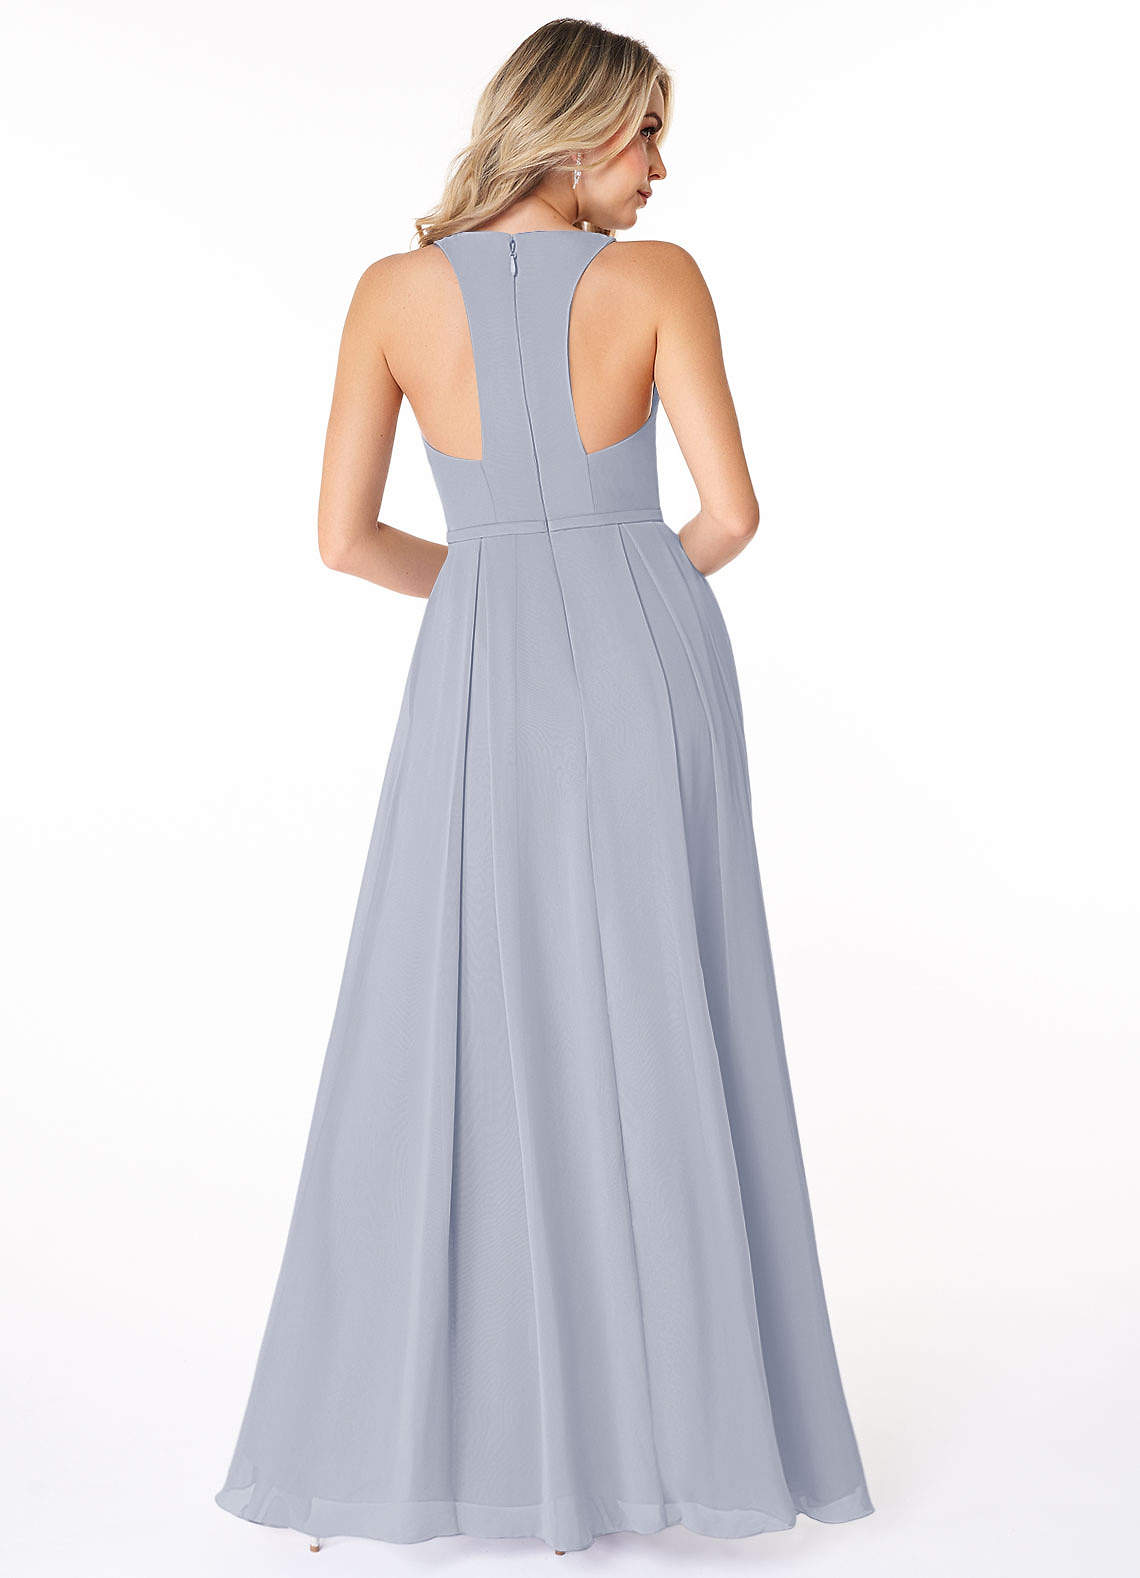 Azazie Mimi Bridesmaid Dresses A-Line V-Neck Chiffon Floor-Length Dress image1